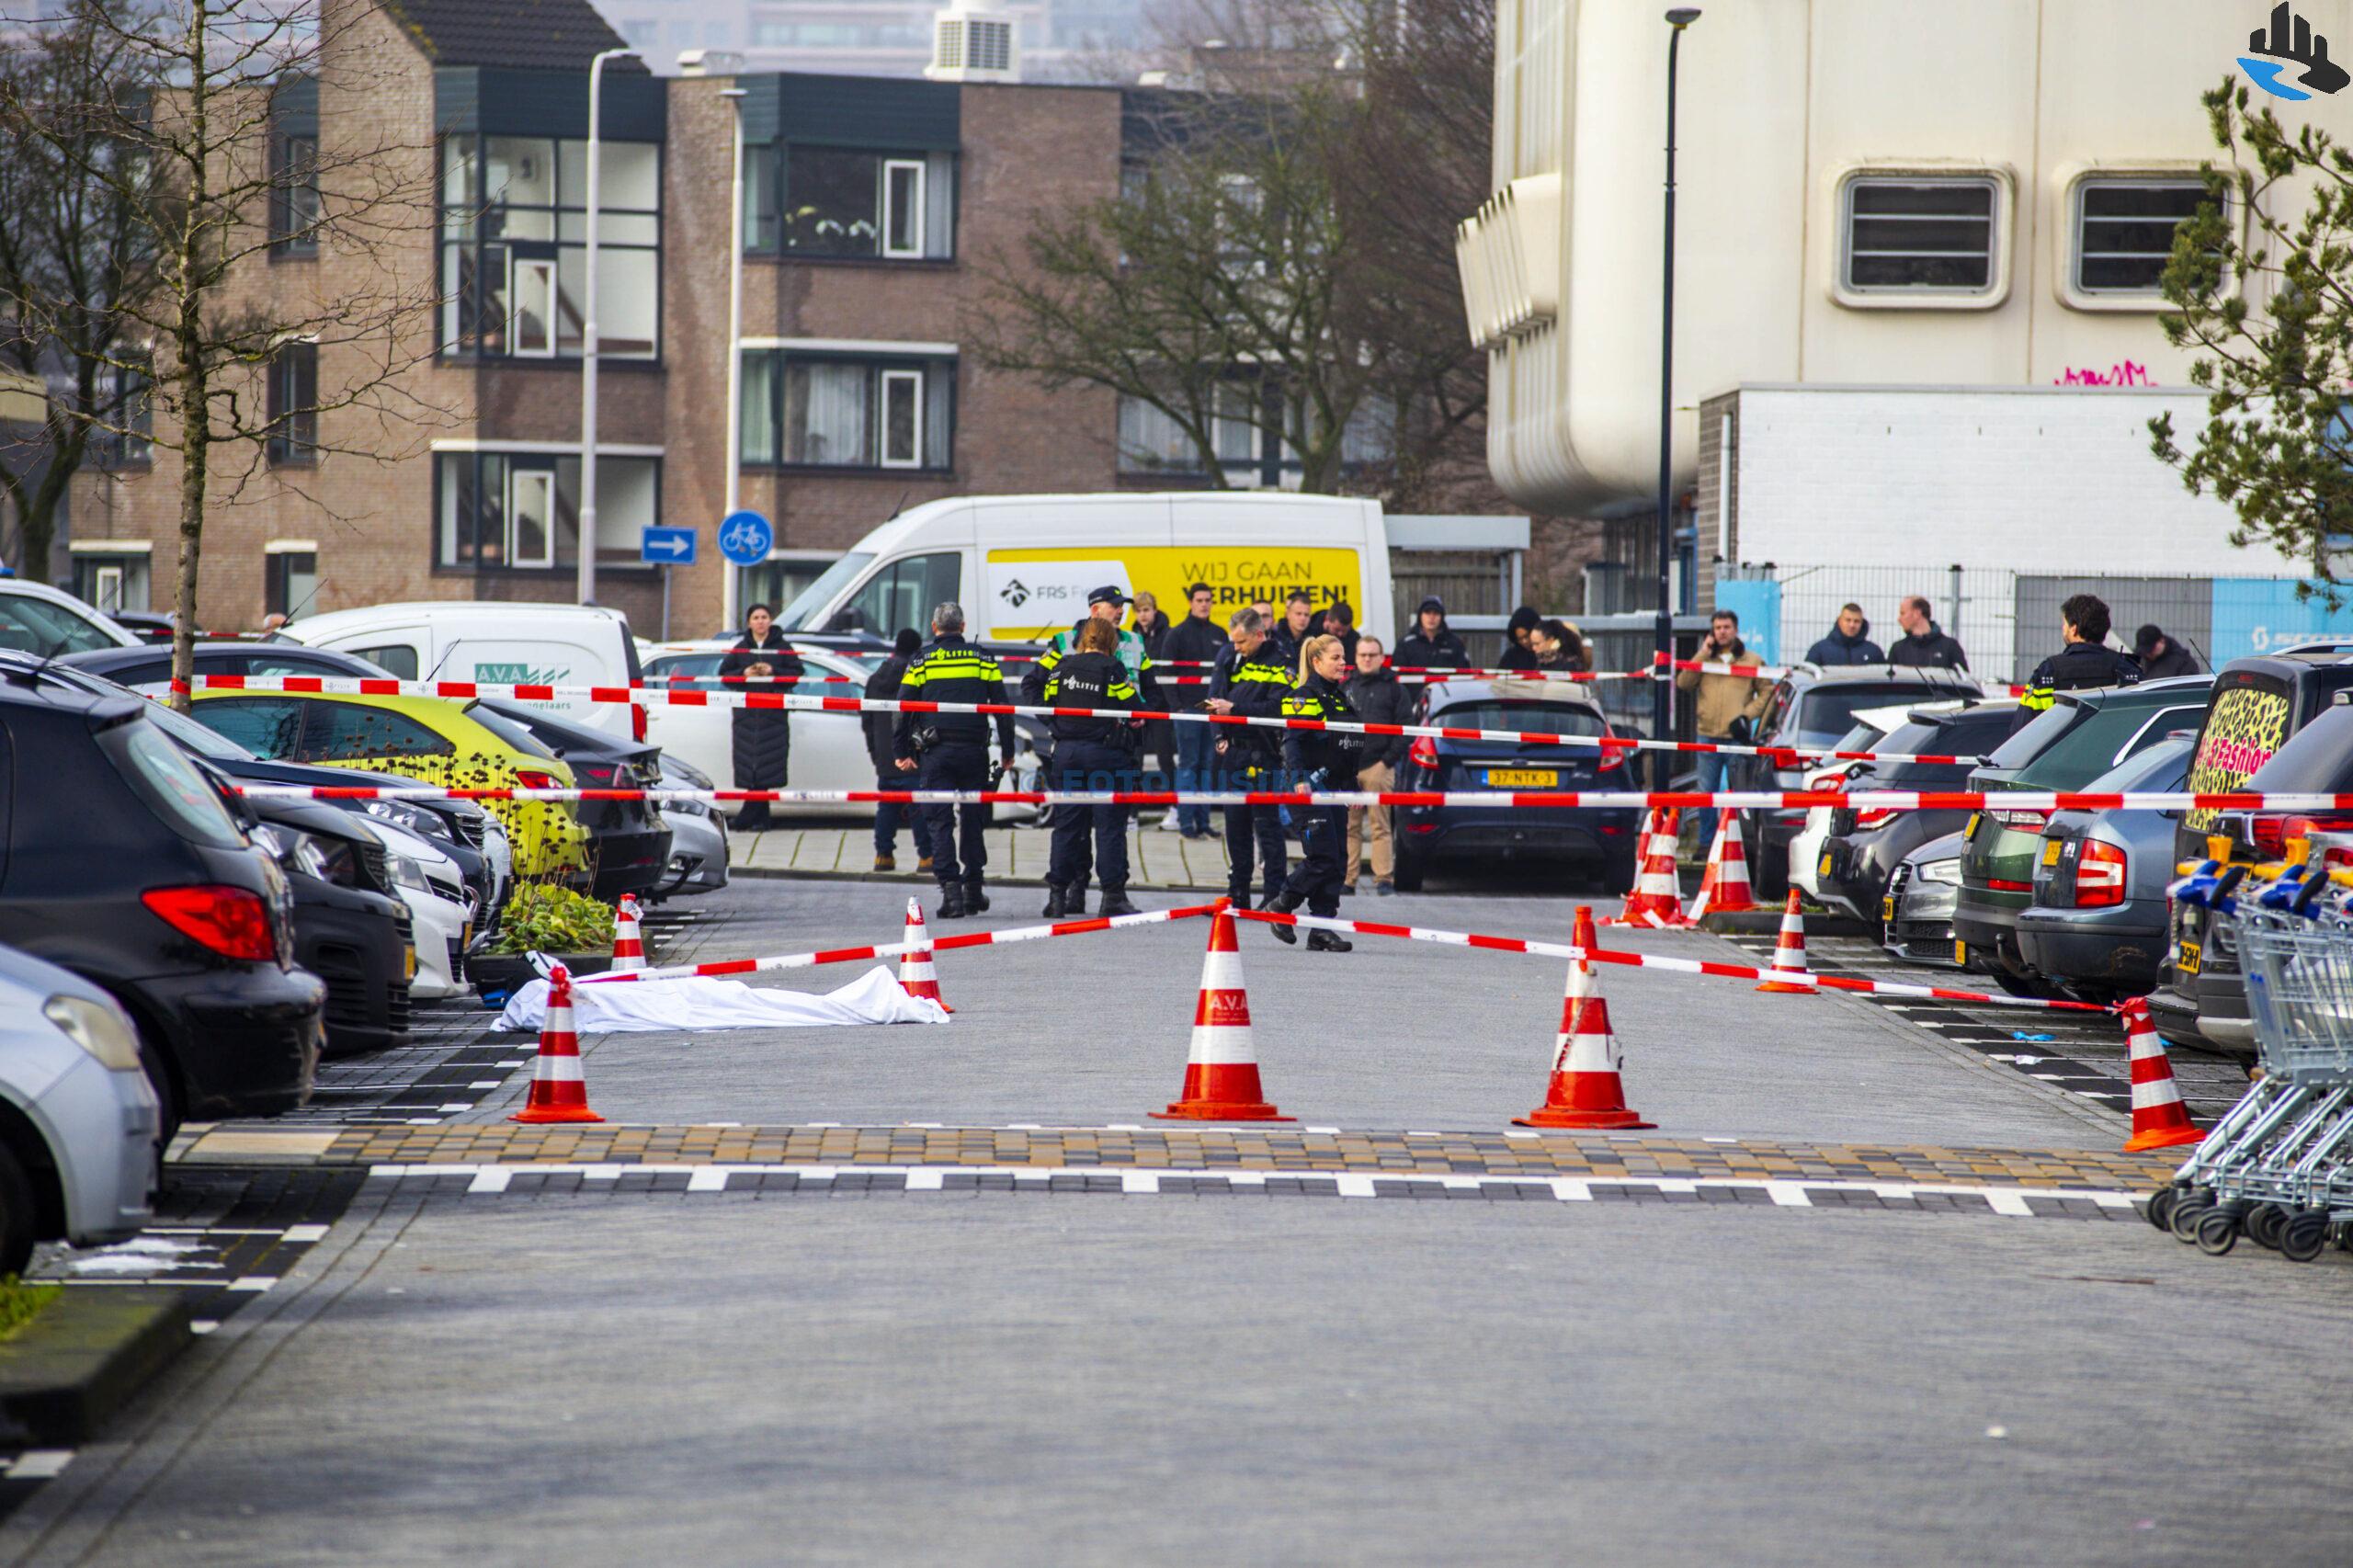 Moeder en dochter neergeschoten naast winkelcentrum Walburg in Zwijndrecht, Moeder overleden